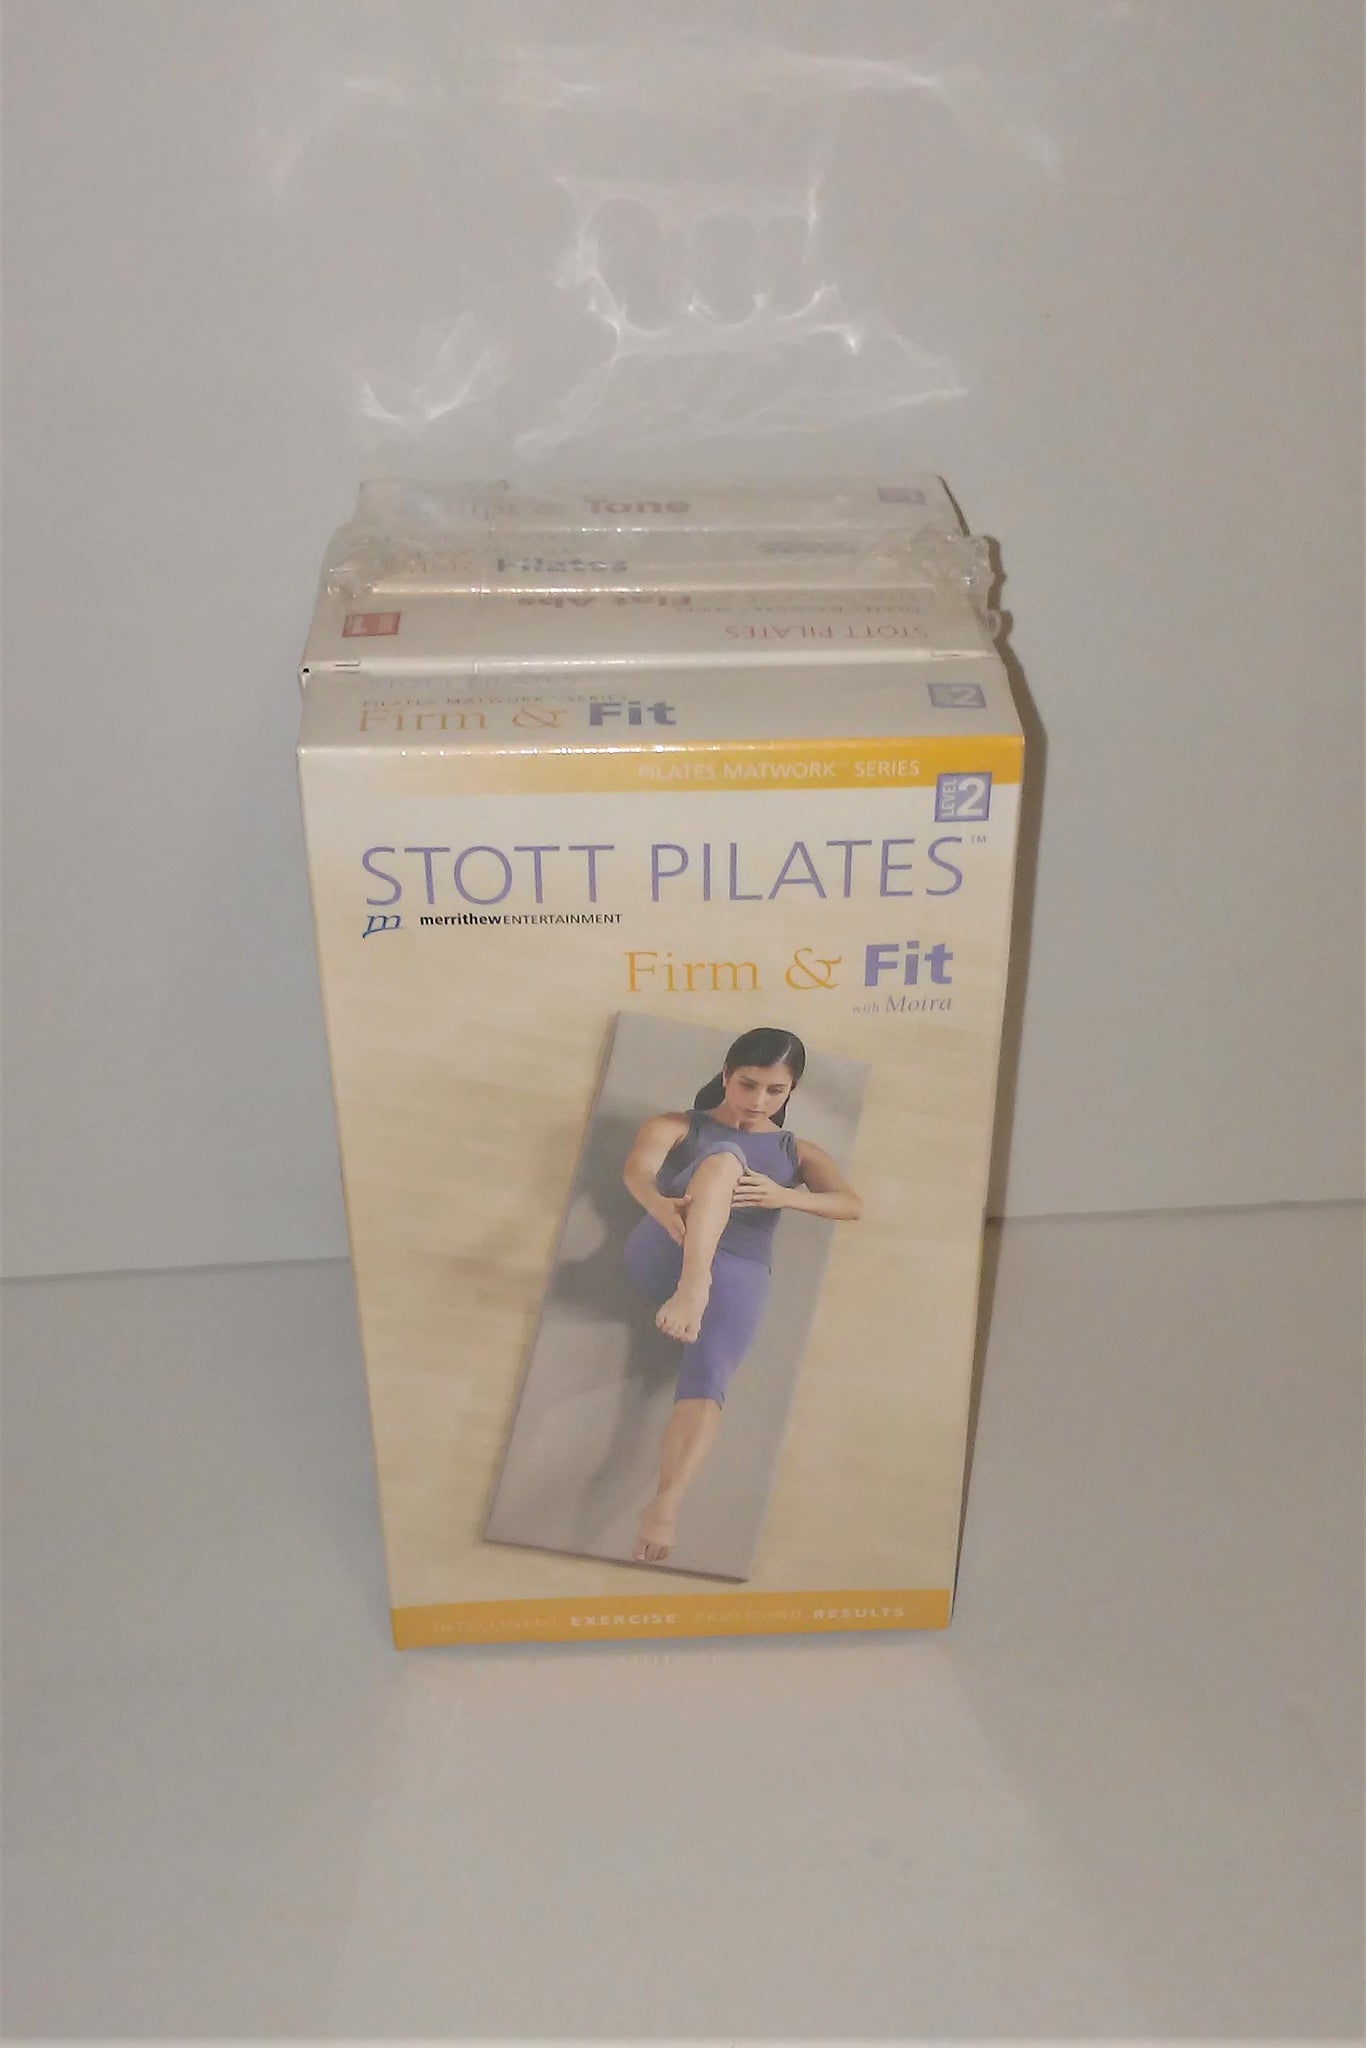 STOTT PILATES 4 Pack VHS Tape Set from 2004 – Sandee's Memories